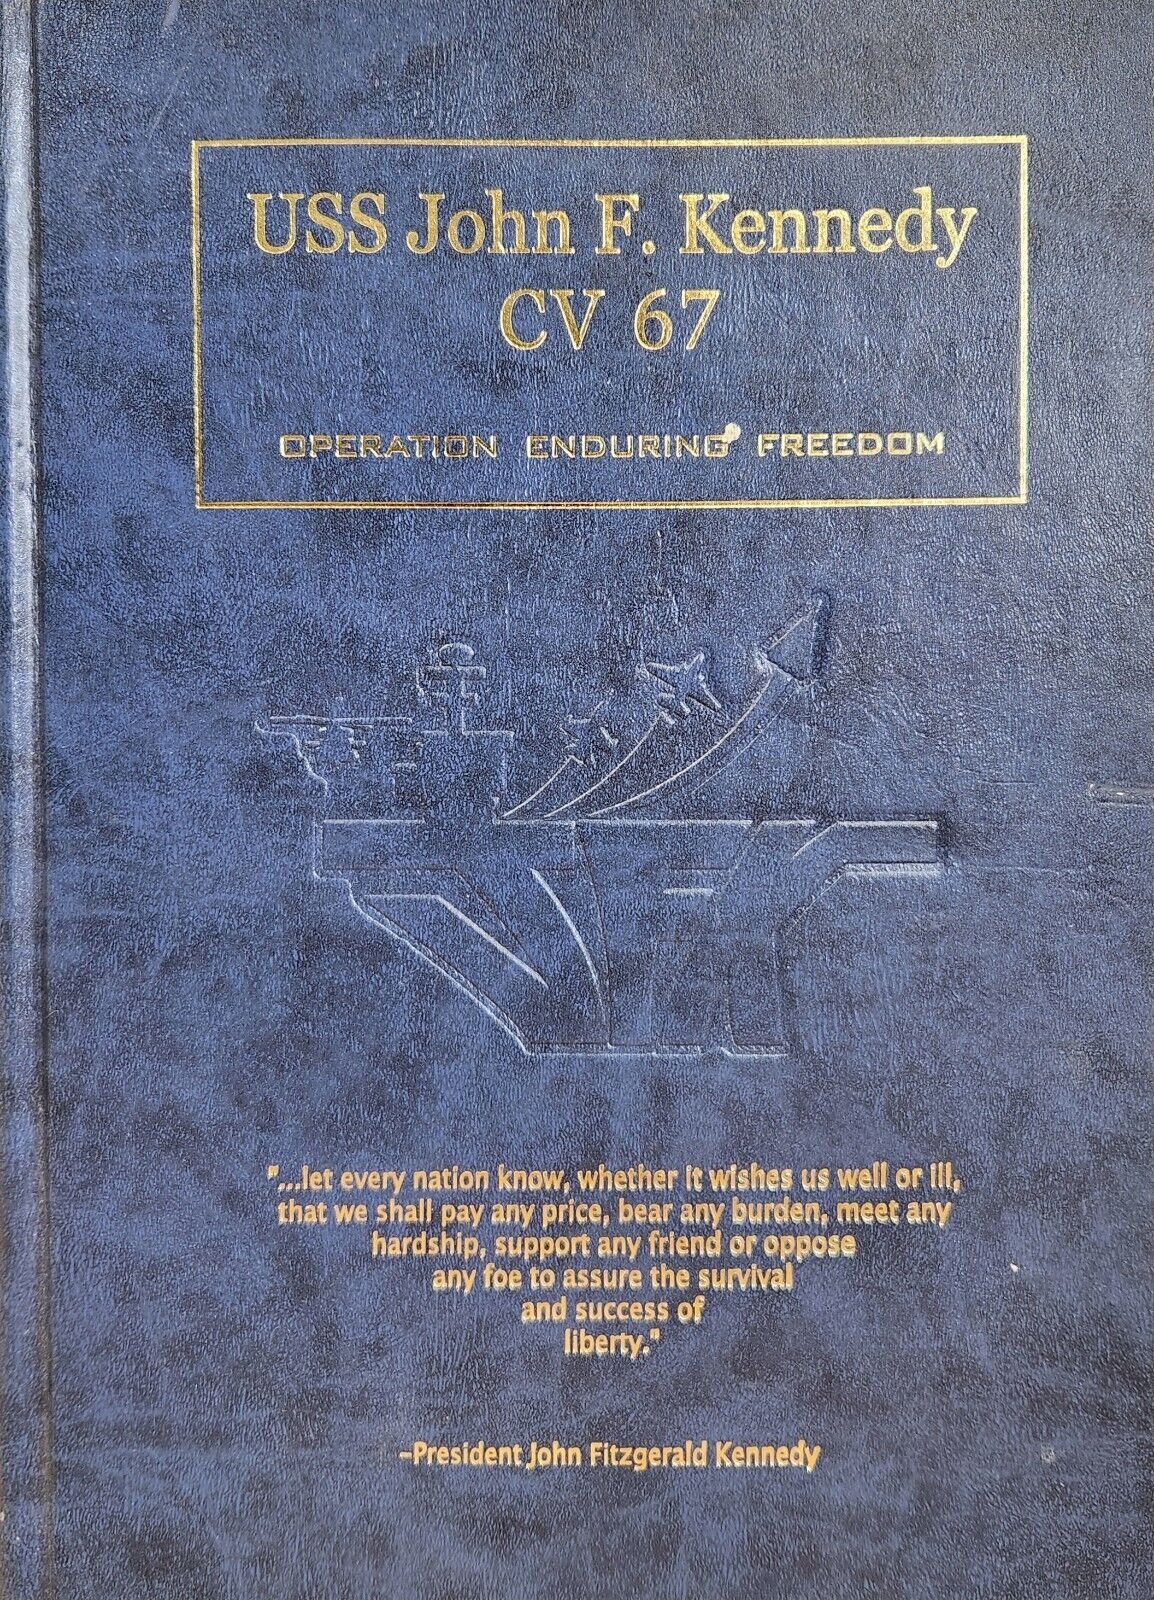 USS JOHN F. KENNEDY CV-67 ENDURING FREEDOM DEPLOYMENT CRUISE BOOK YEAR LOG 2002